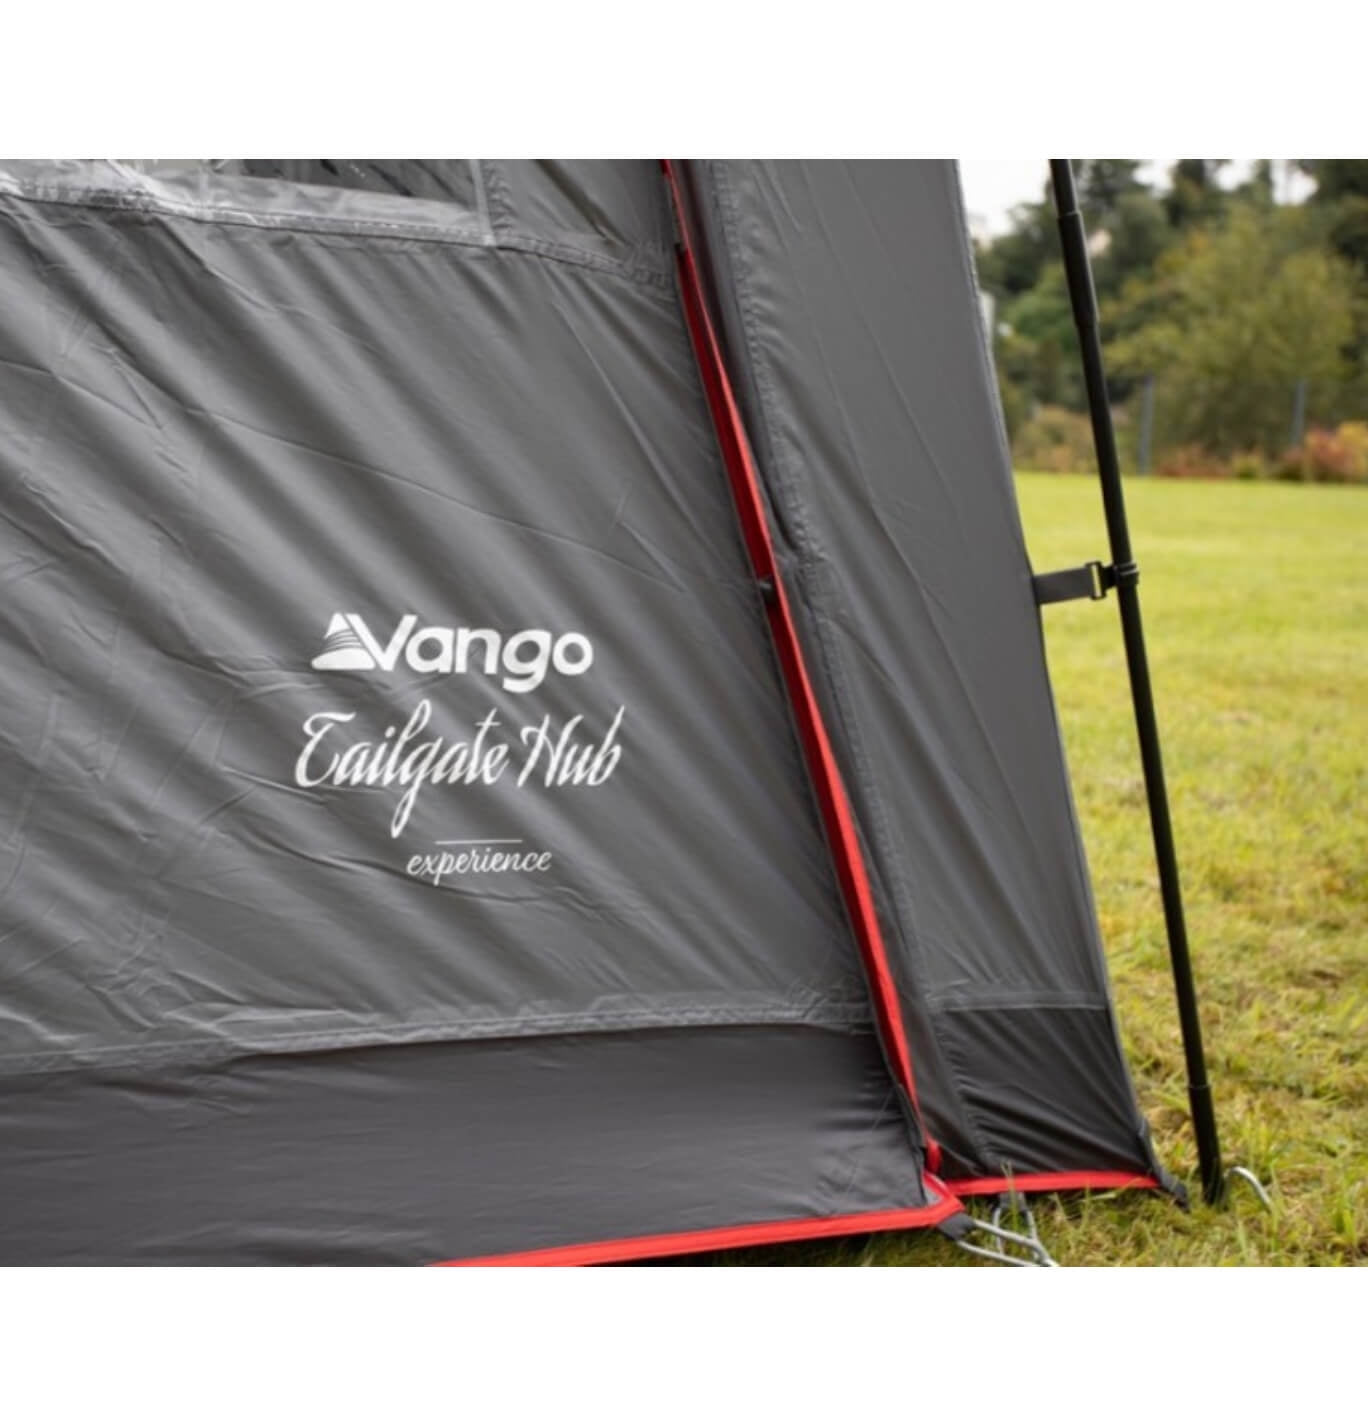 The branding on the Vango tent